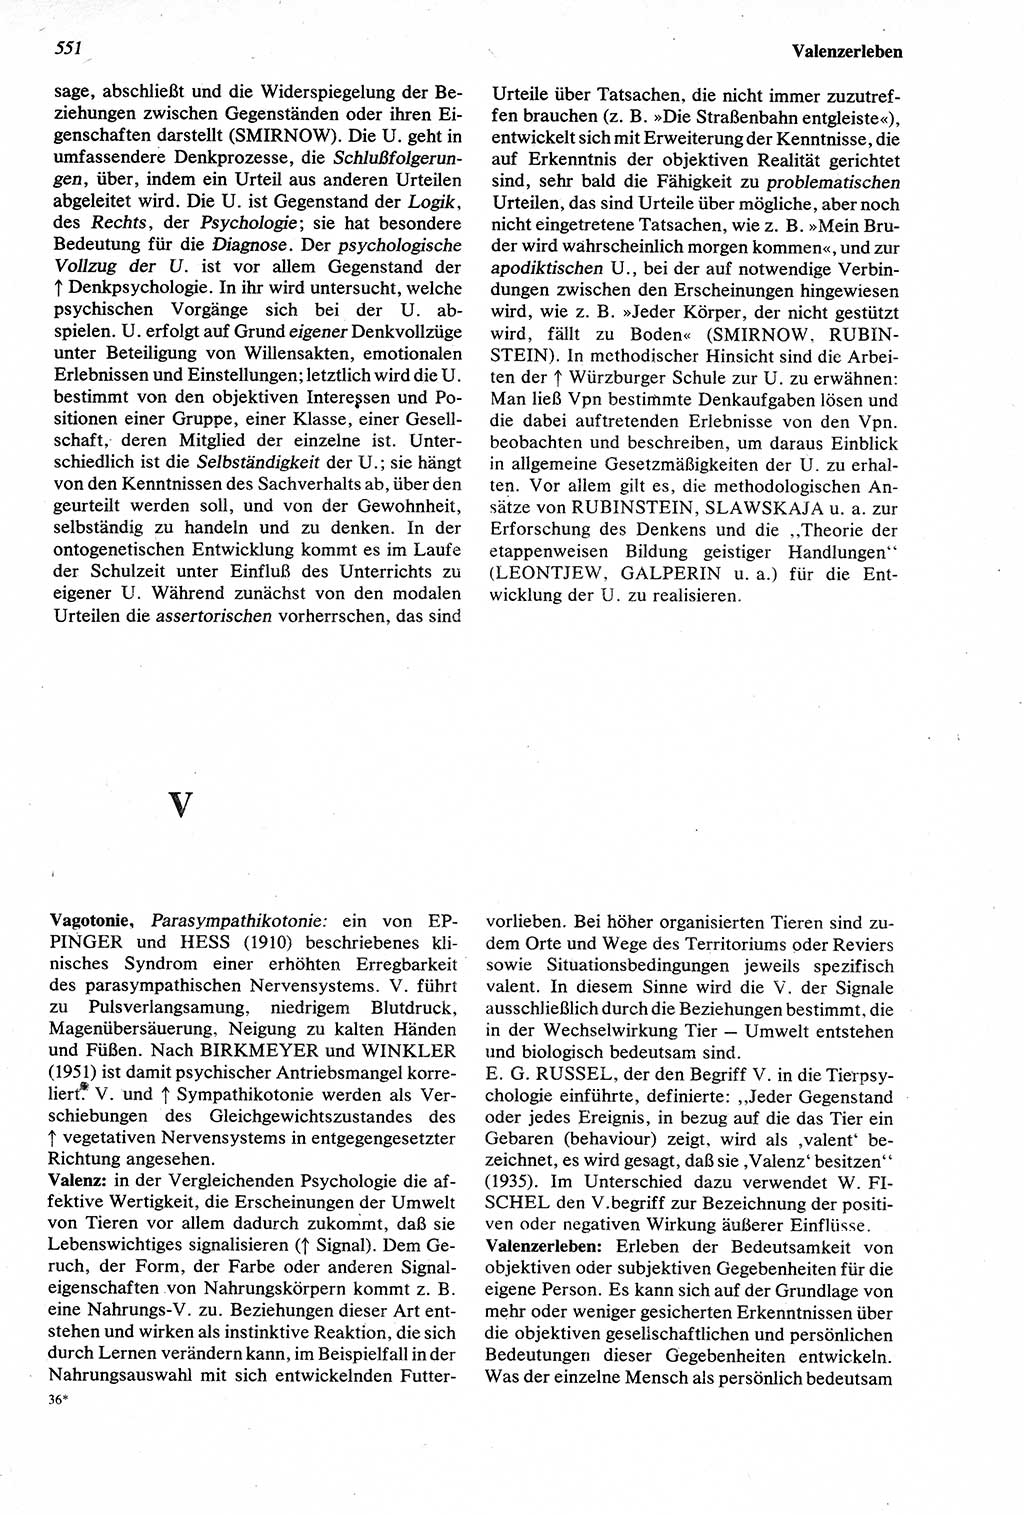 Wörterbuch der Psychologie [Deutsche Demokratische Republik (DDR)] 1976, Seite 551 (Wb. Psych. DDR 1976, S. 551)